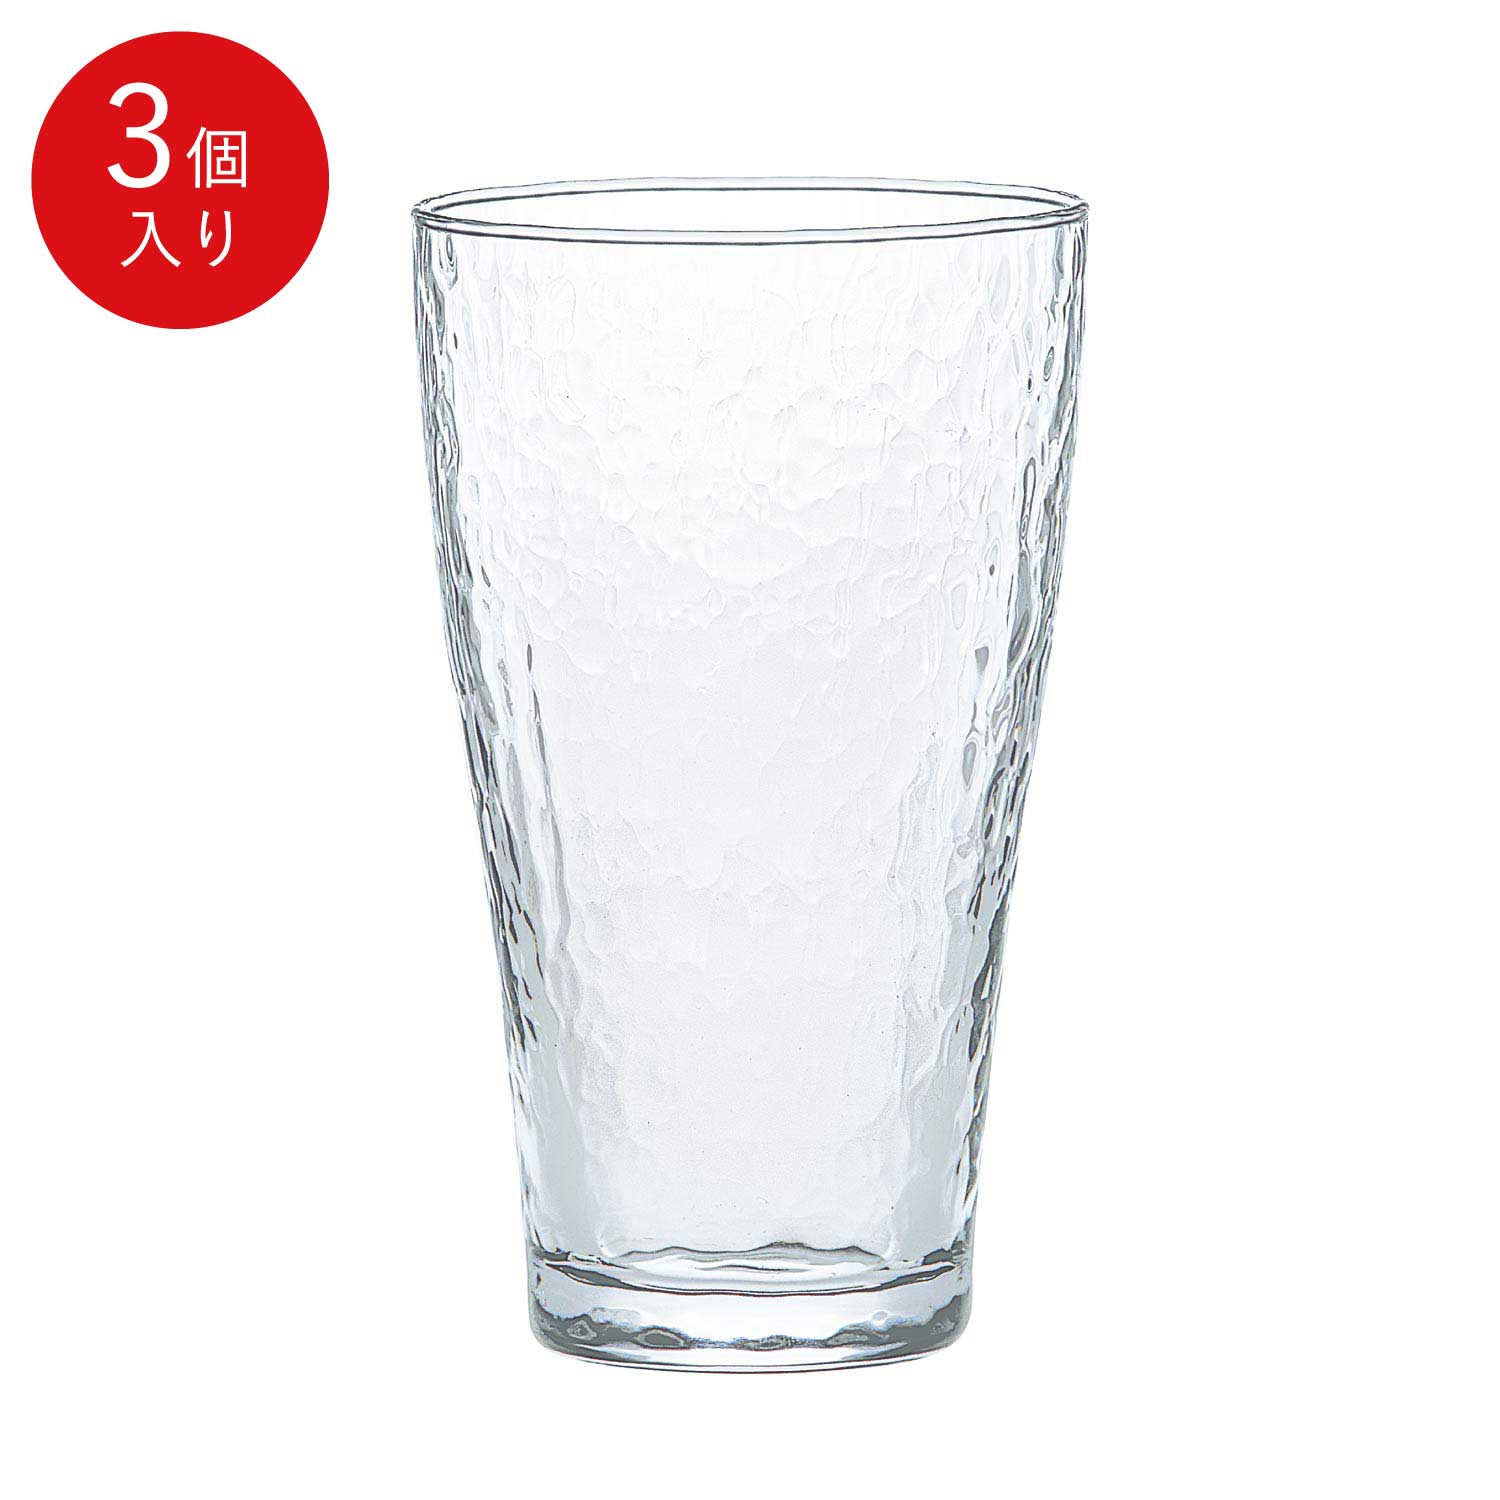 東洋佐々木ガラス タンブラー 3個セット 375ml 家庭用 家飲み 食洗機対応 グラス グラスセット セット コップ ガラス ウイスキー ハイボール サワーグラス ビールグラス おしゃれ シンプル プレゼント 贈答 ギフト さざめき 佐々木ガラス